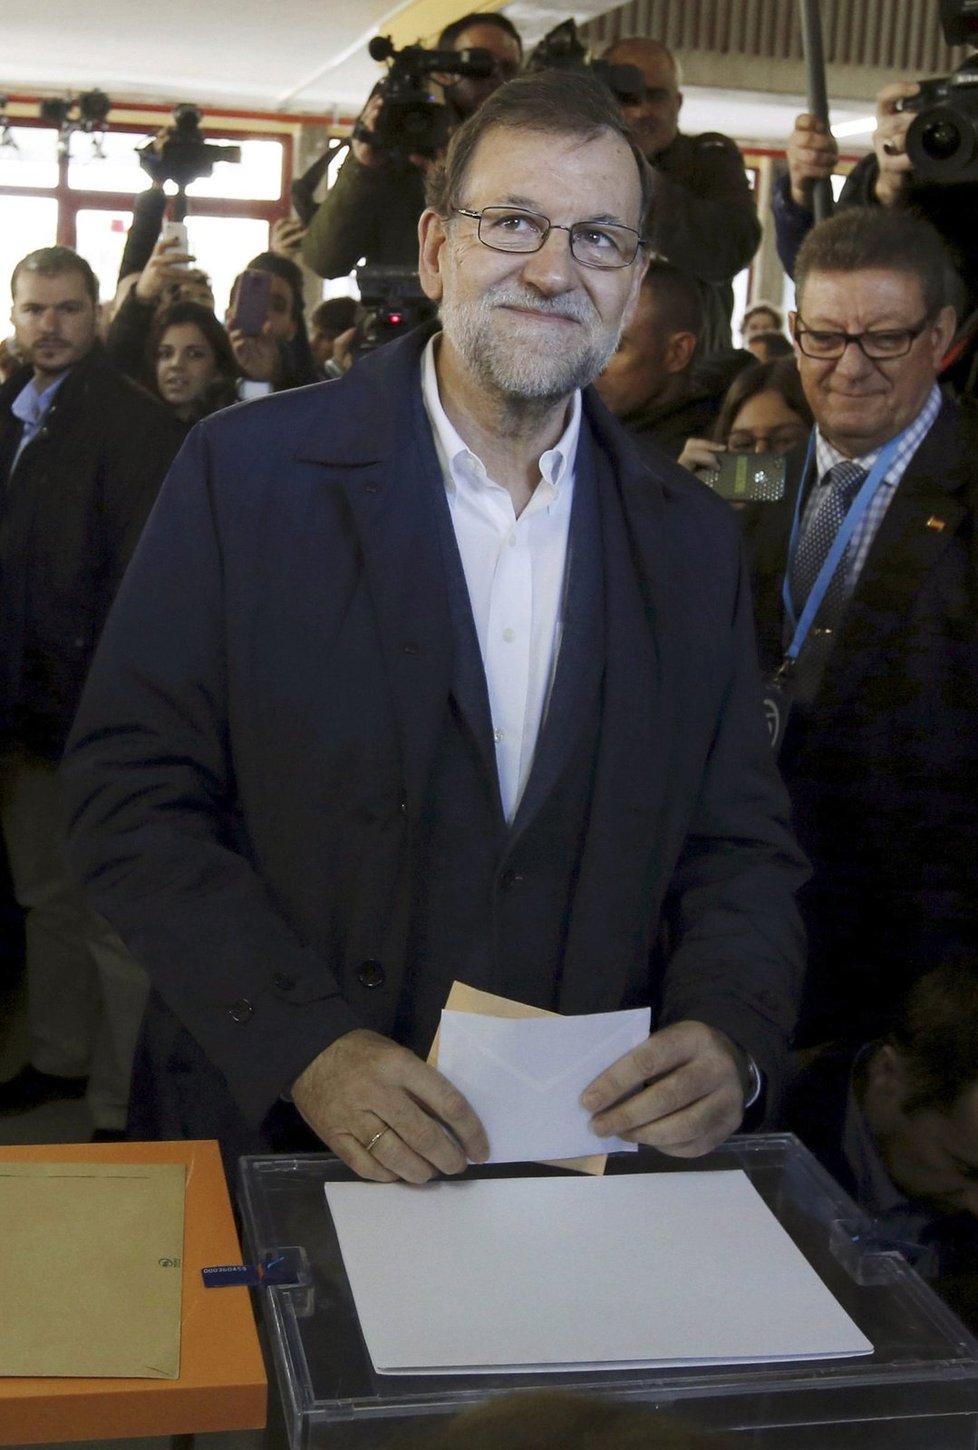 Španělské volby 2015: Šéf lidovců a dosavadní premiér Mariano Rajoy